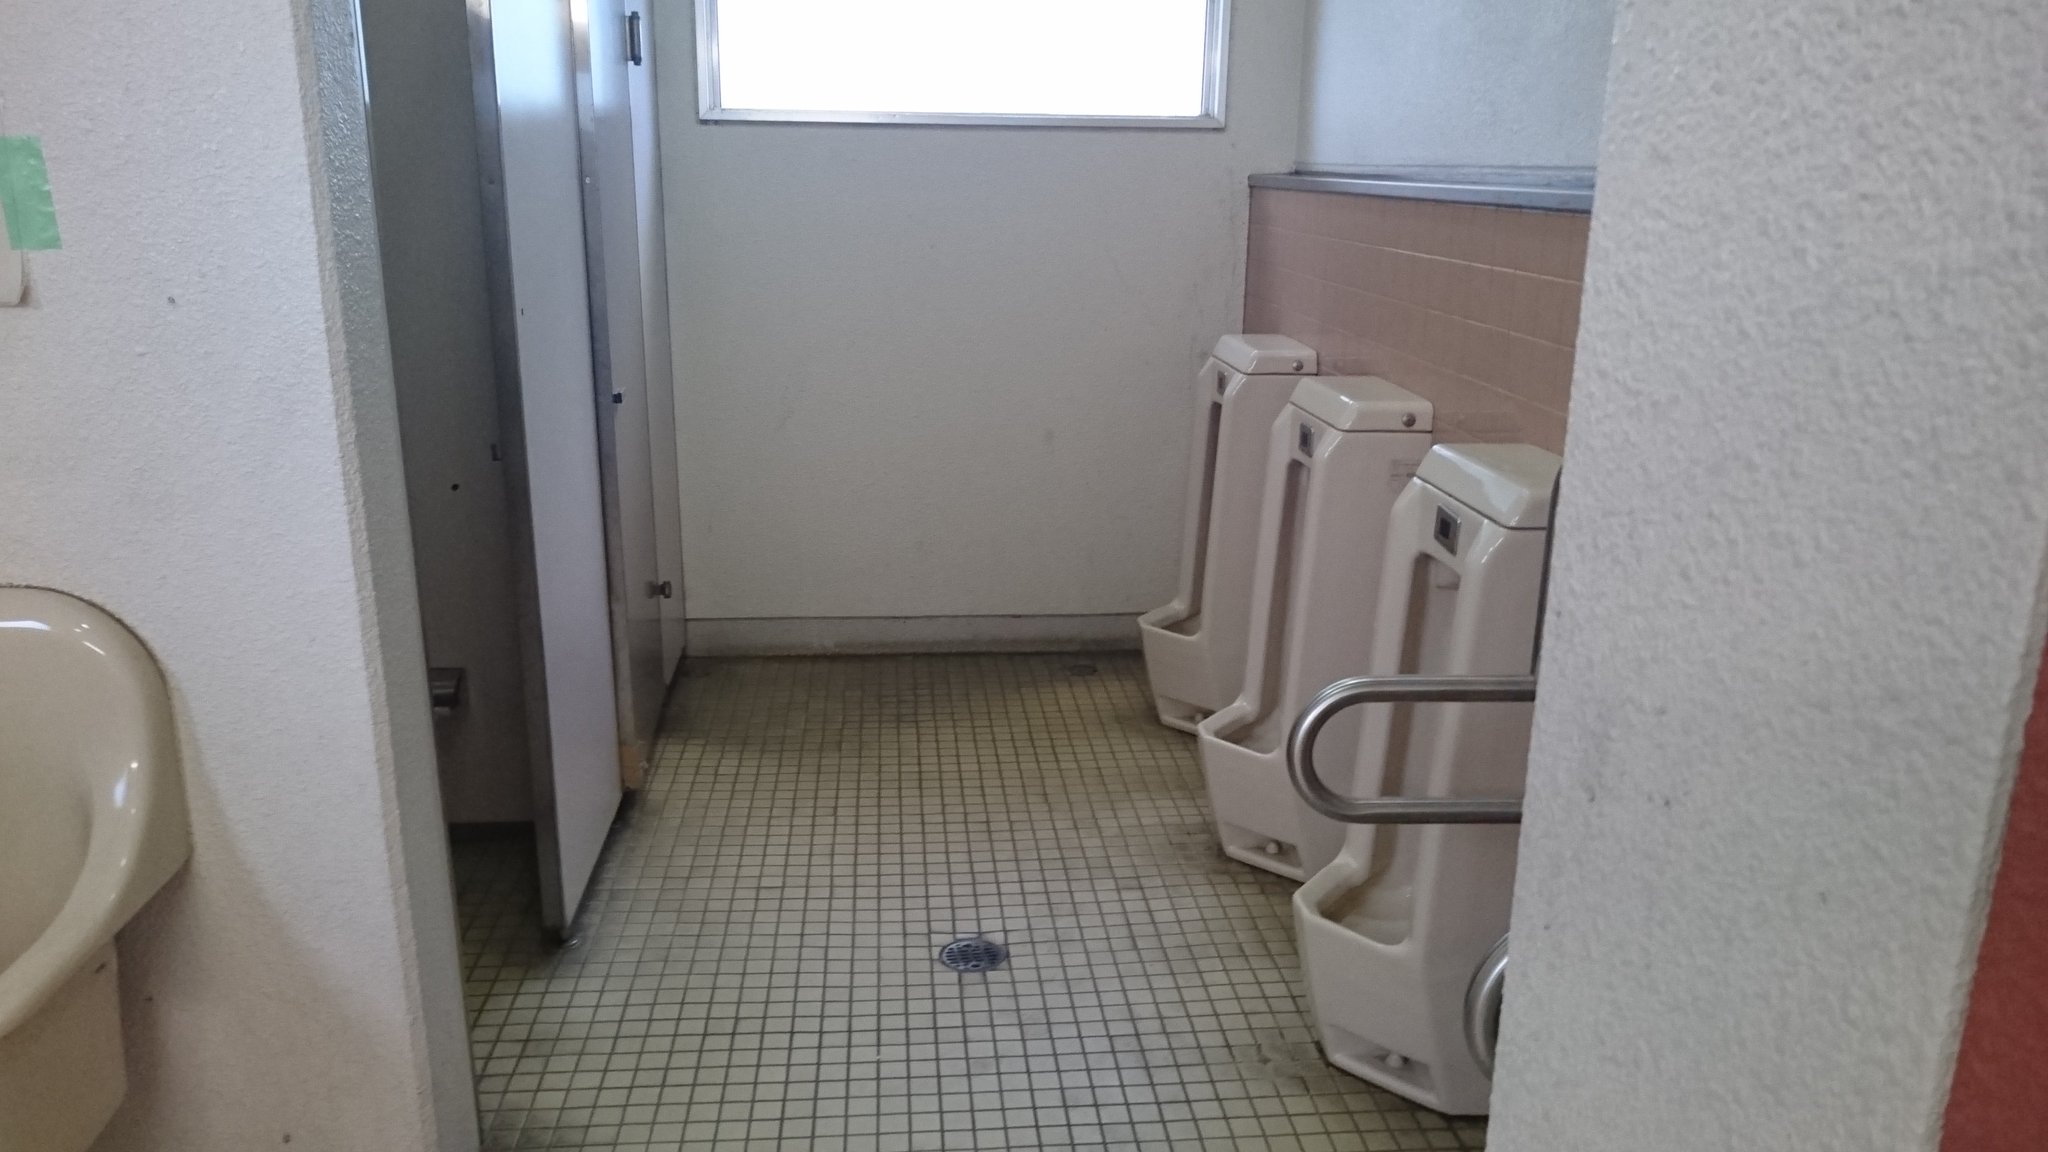 トイレの魅力をみんなに伝えるbot on Twitter "エスパルスドリームプラザ横にある公衆トイレ。 中が広く